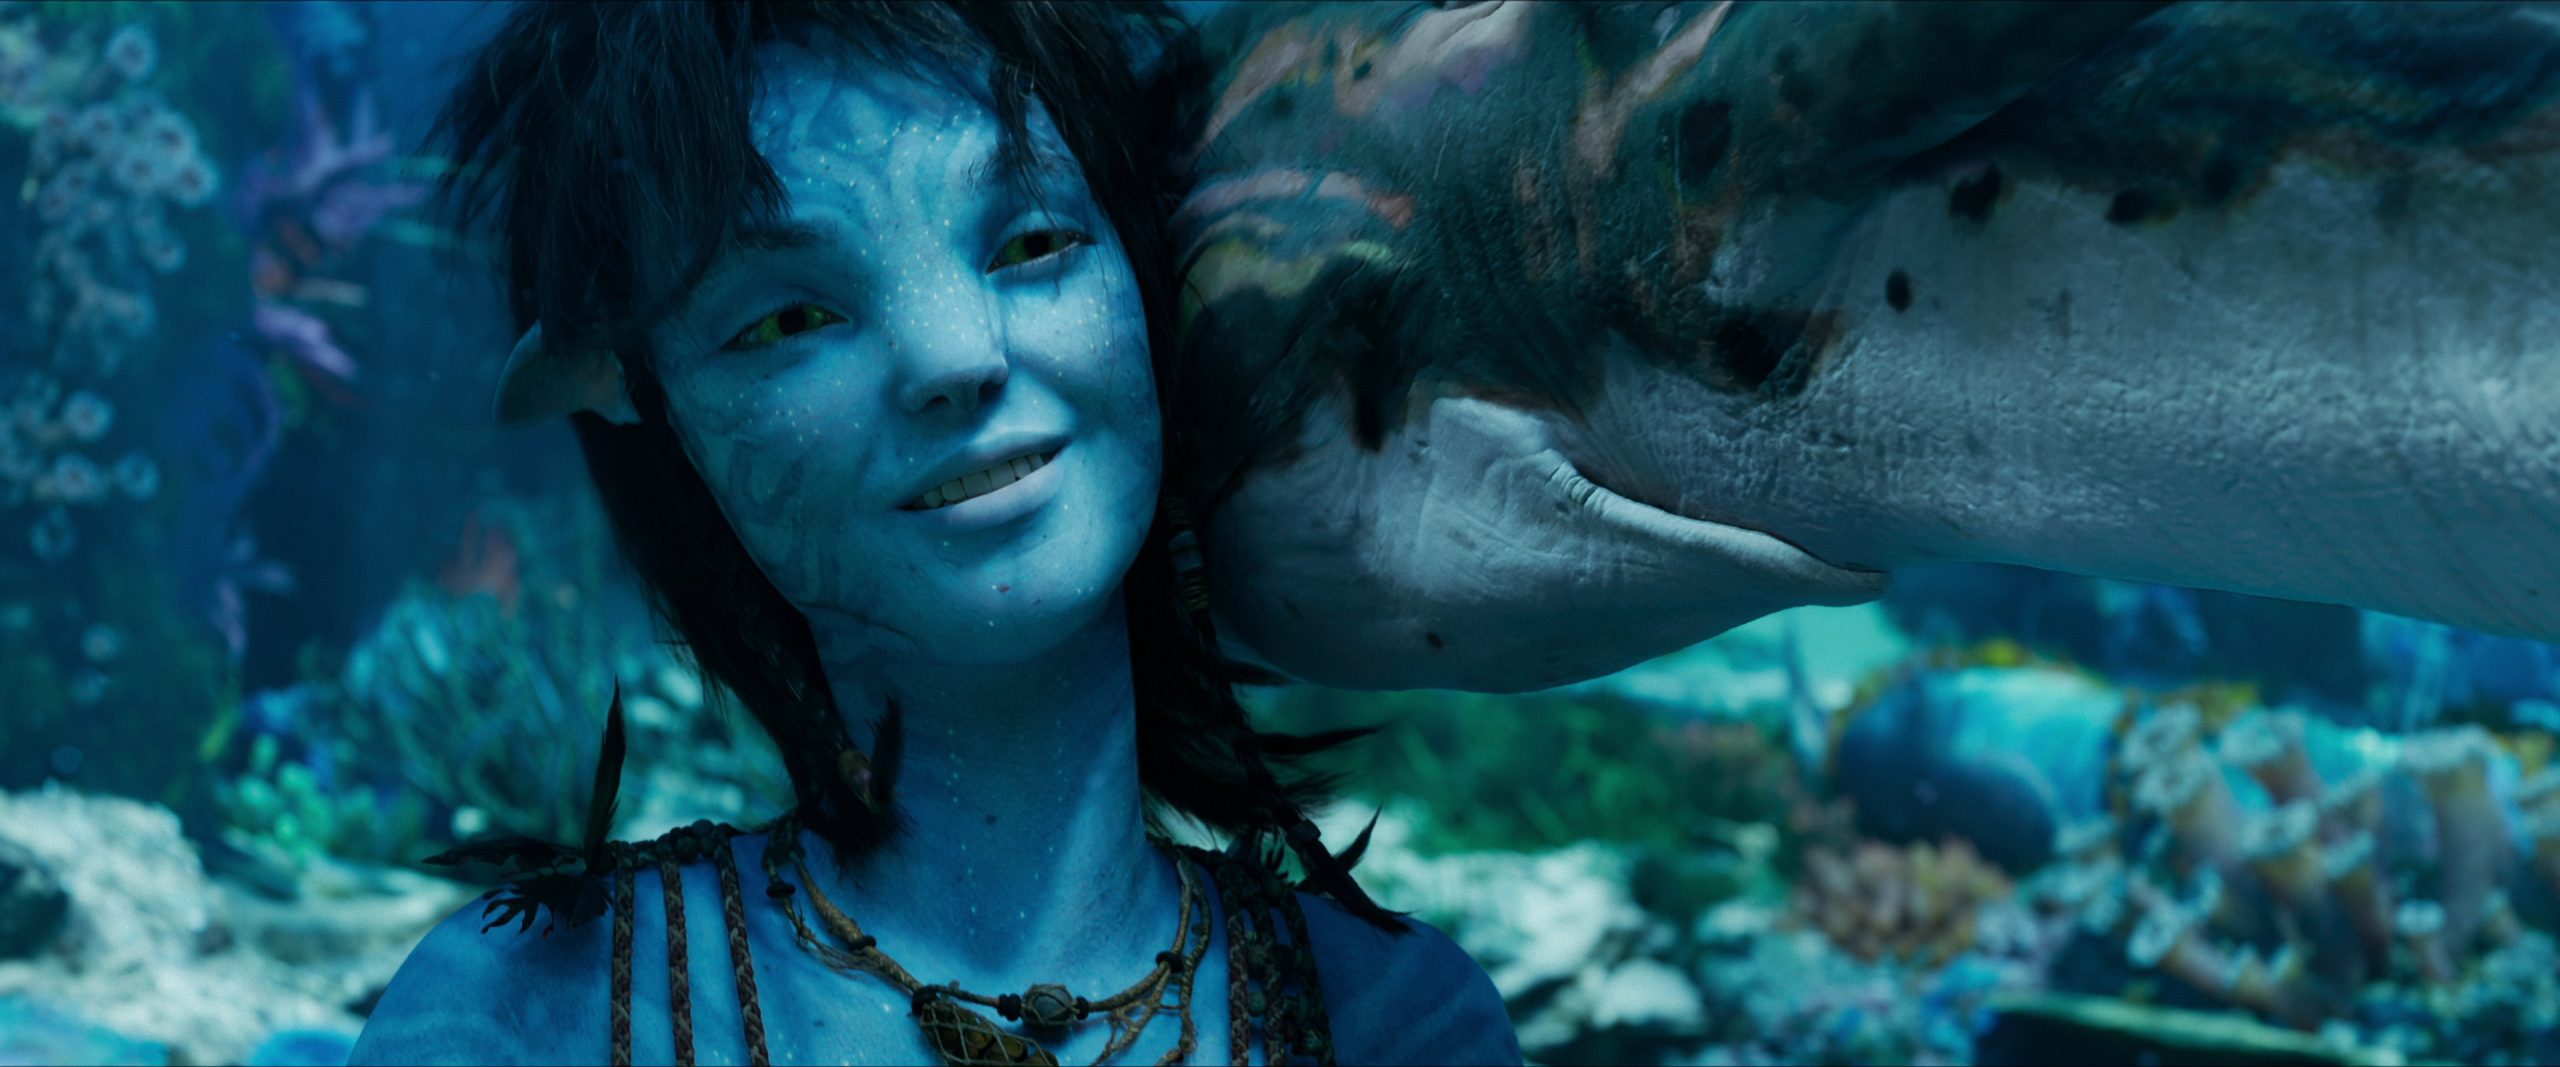 Có thể mong chờ gì từ Avatar 2: Dòng Chảy Của Nước? - Divine News